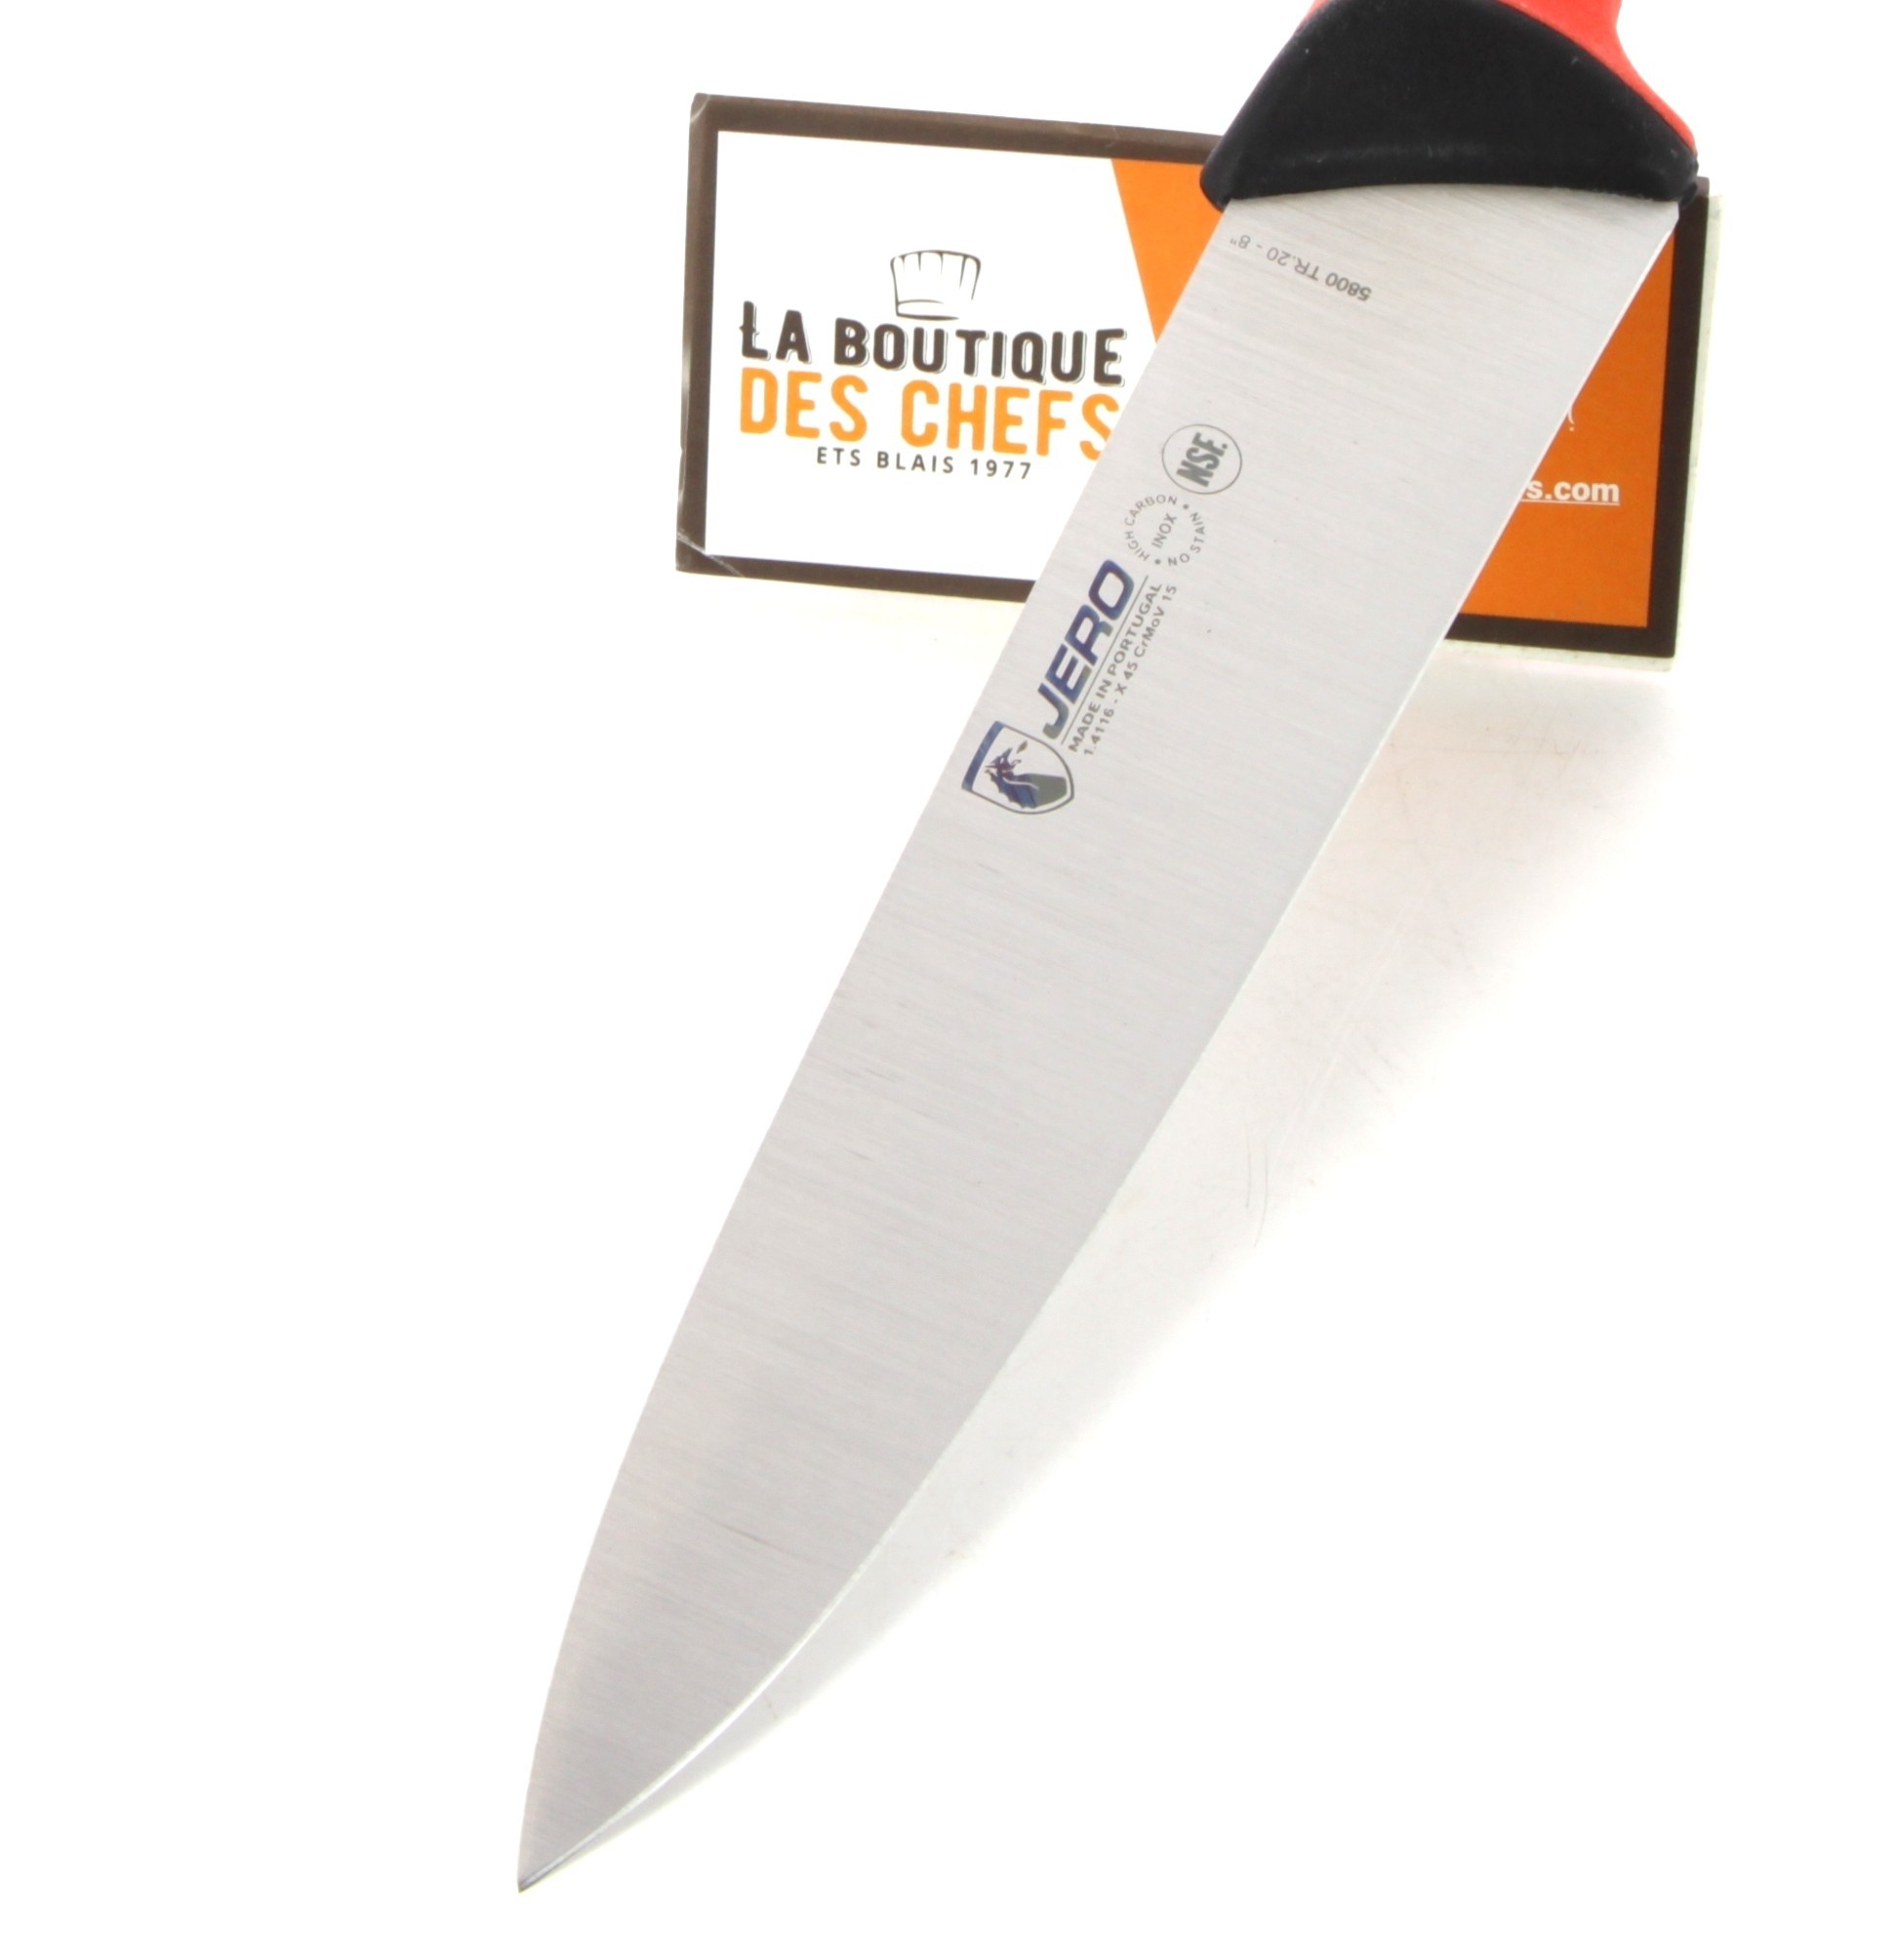 Couteau de boucher Fischer lame 20cm manche PP rouge